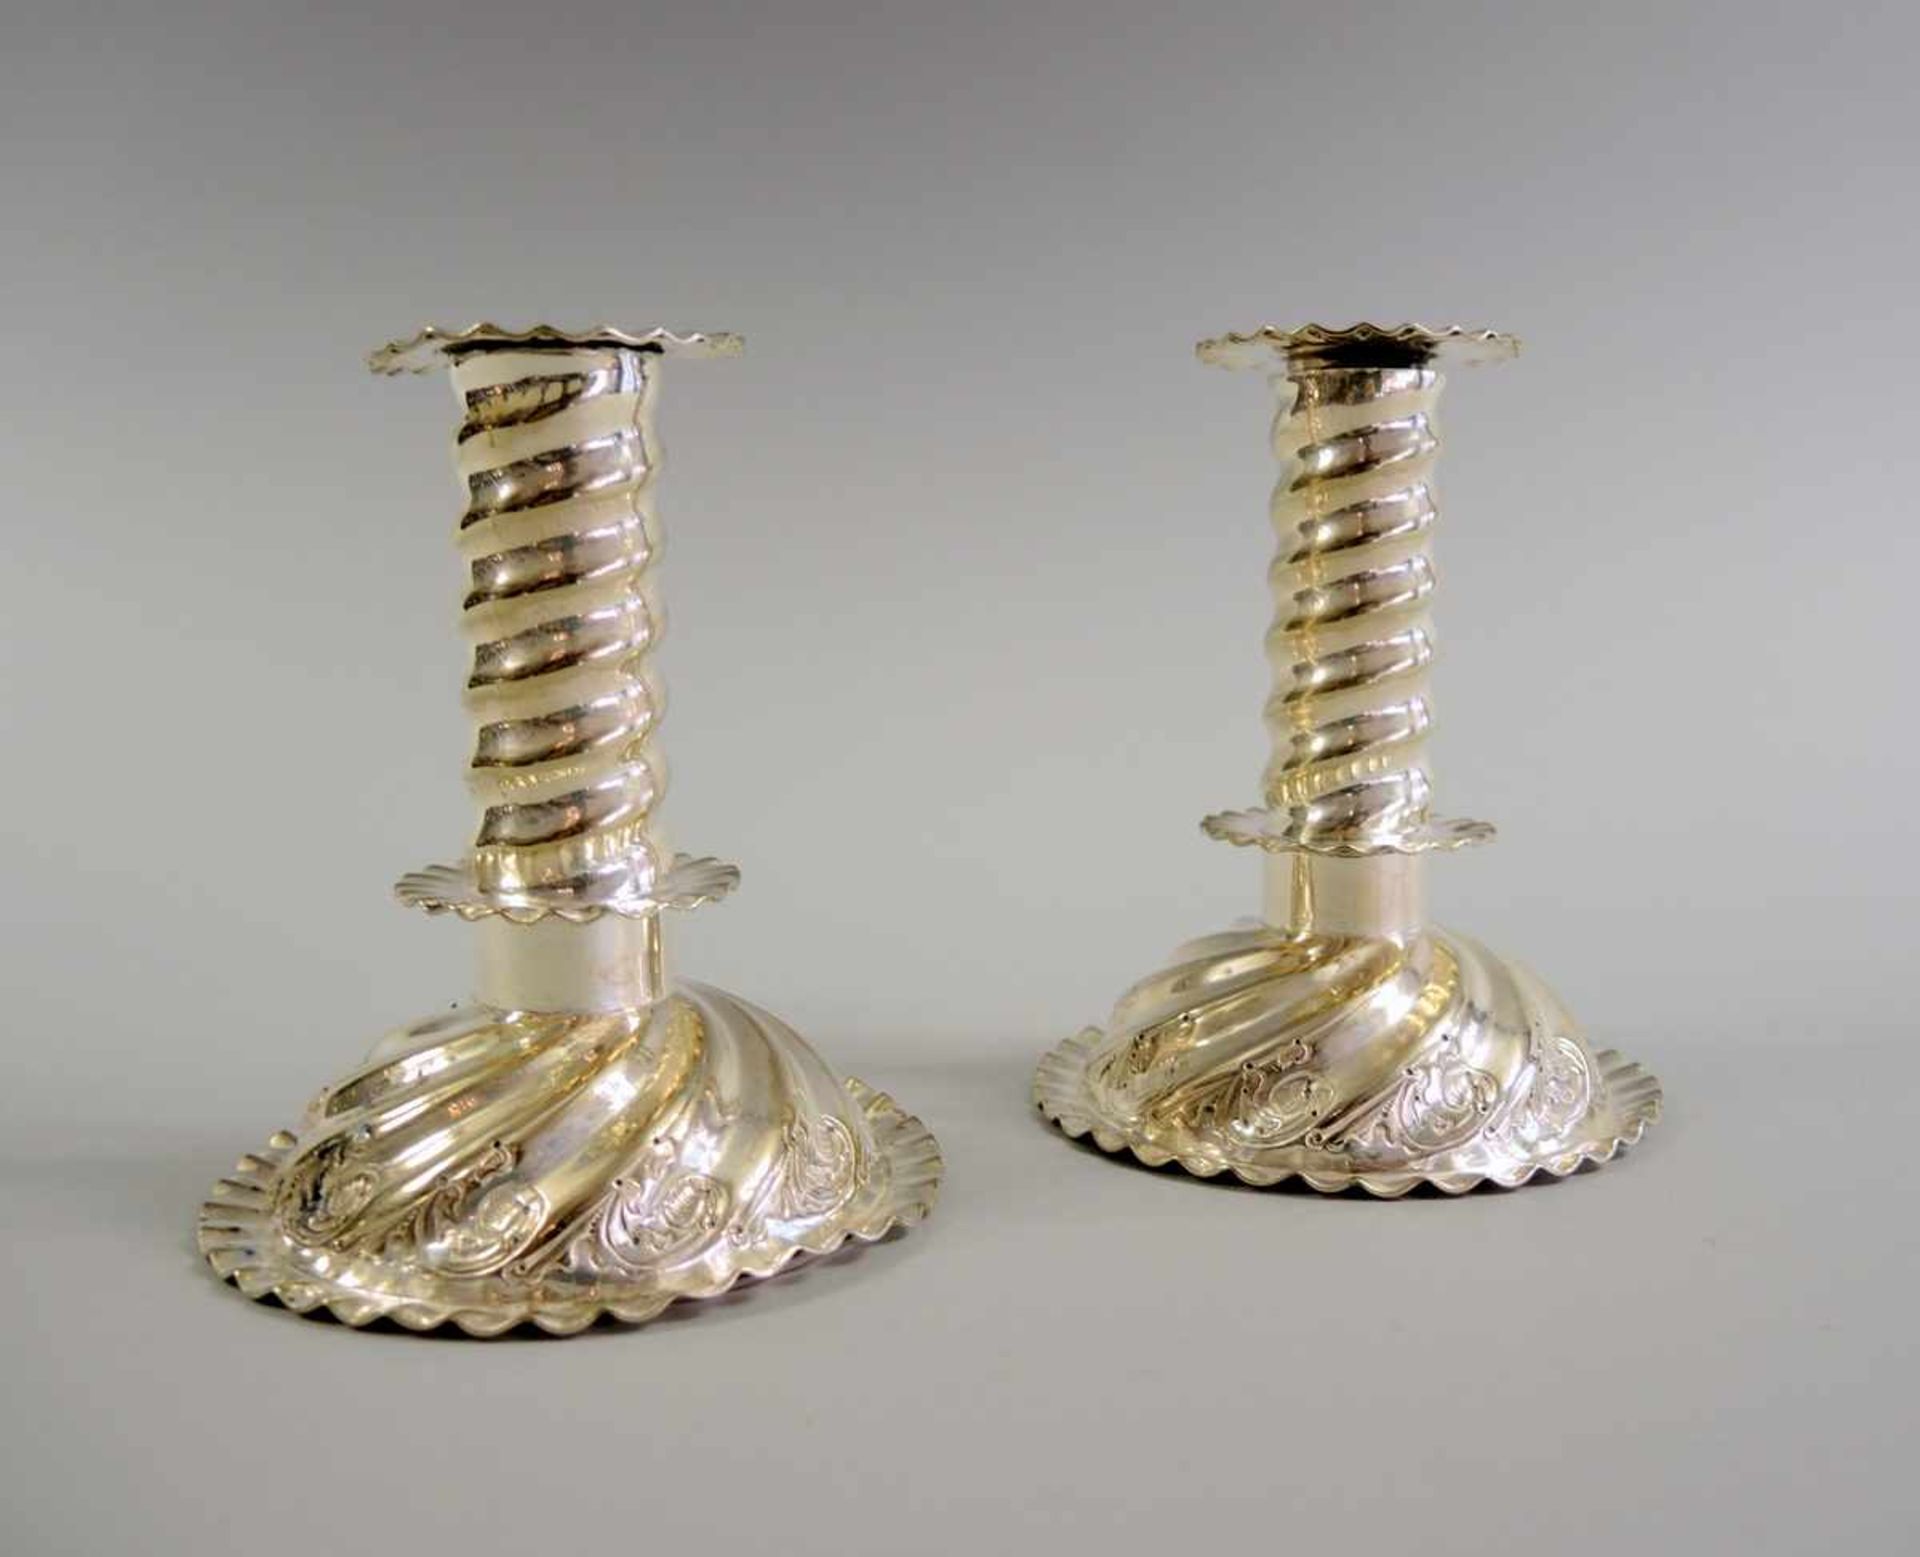 Paar Kerzenleuchter Silber plated, weighted, am Boden mit Seriennummer punziert. Neorenaissance Stil - Bild 2 aus 2